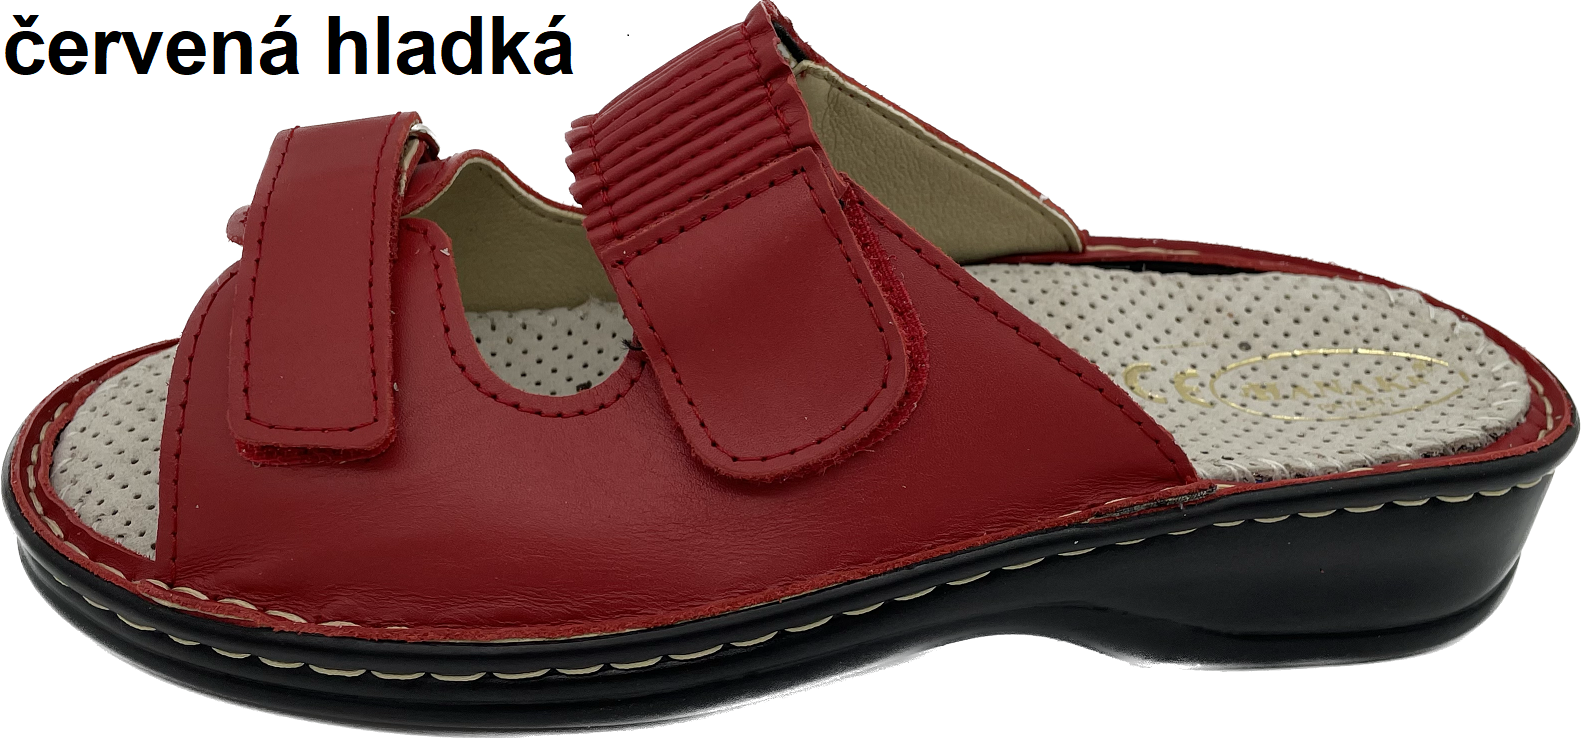 Boty Hanák vzor 318 - černá podešev Barva usně: červená hladká, Velikosti obuvi: 42